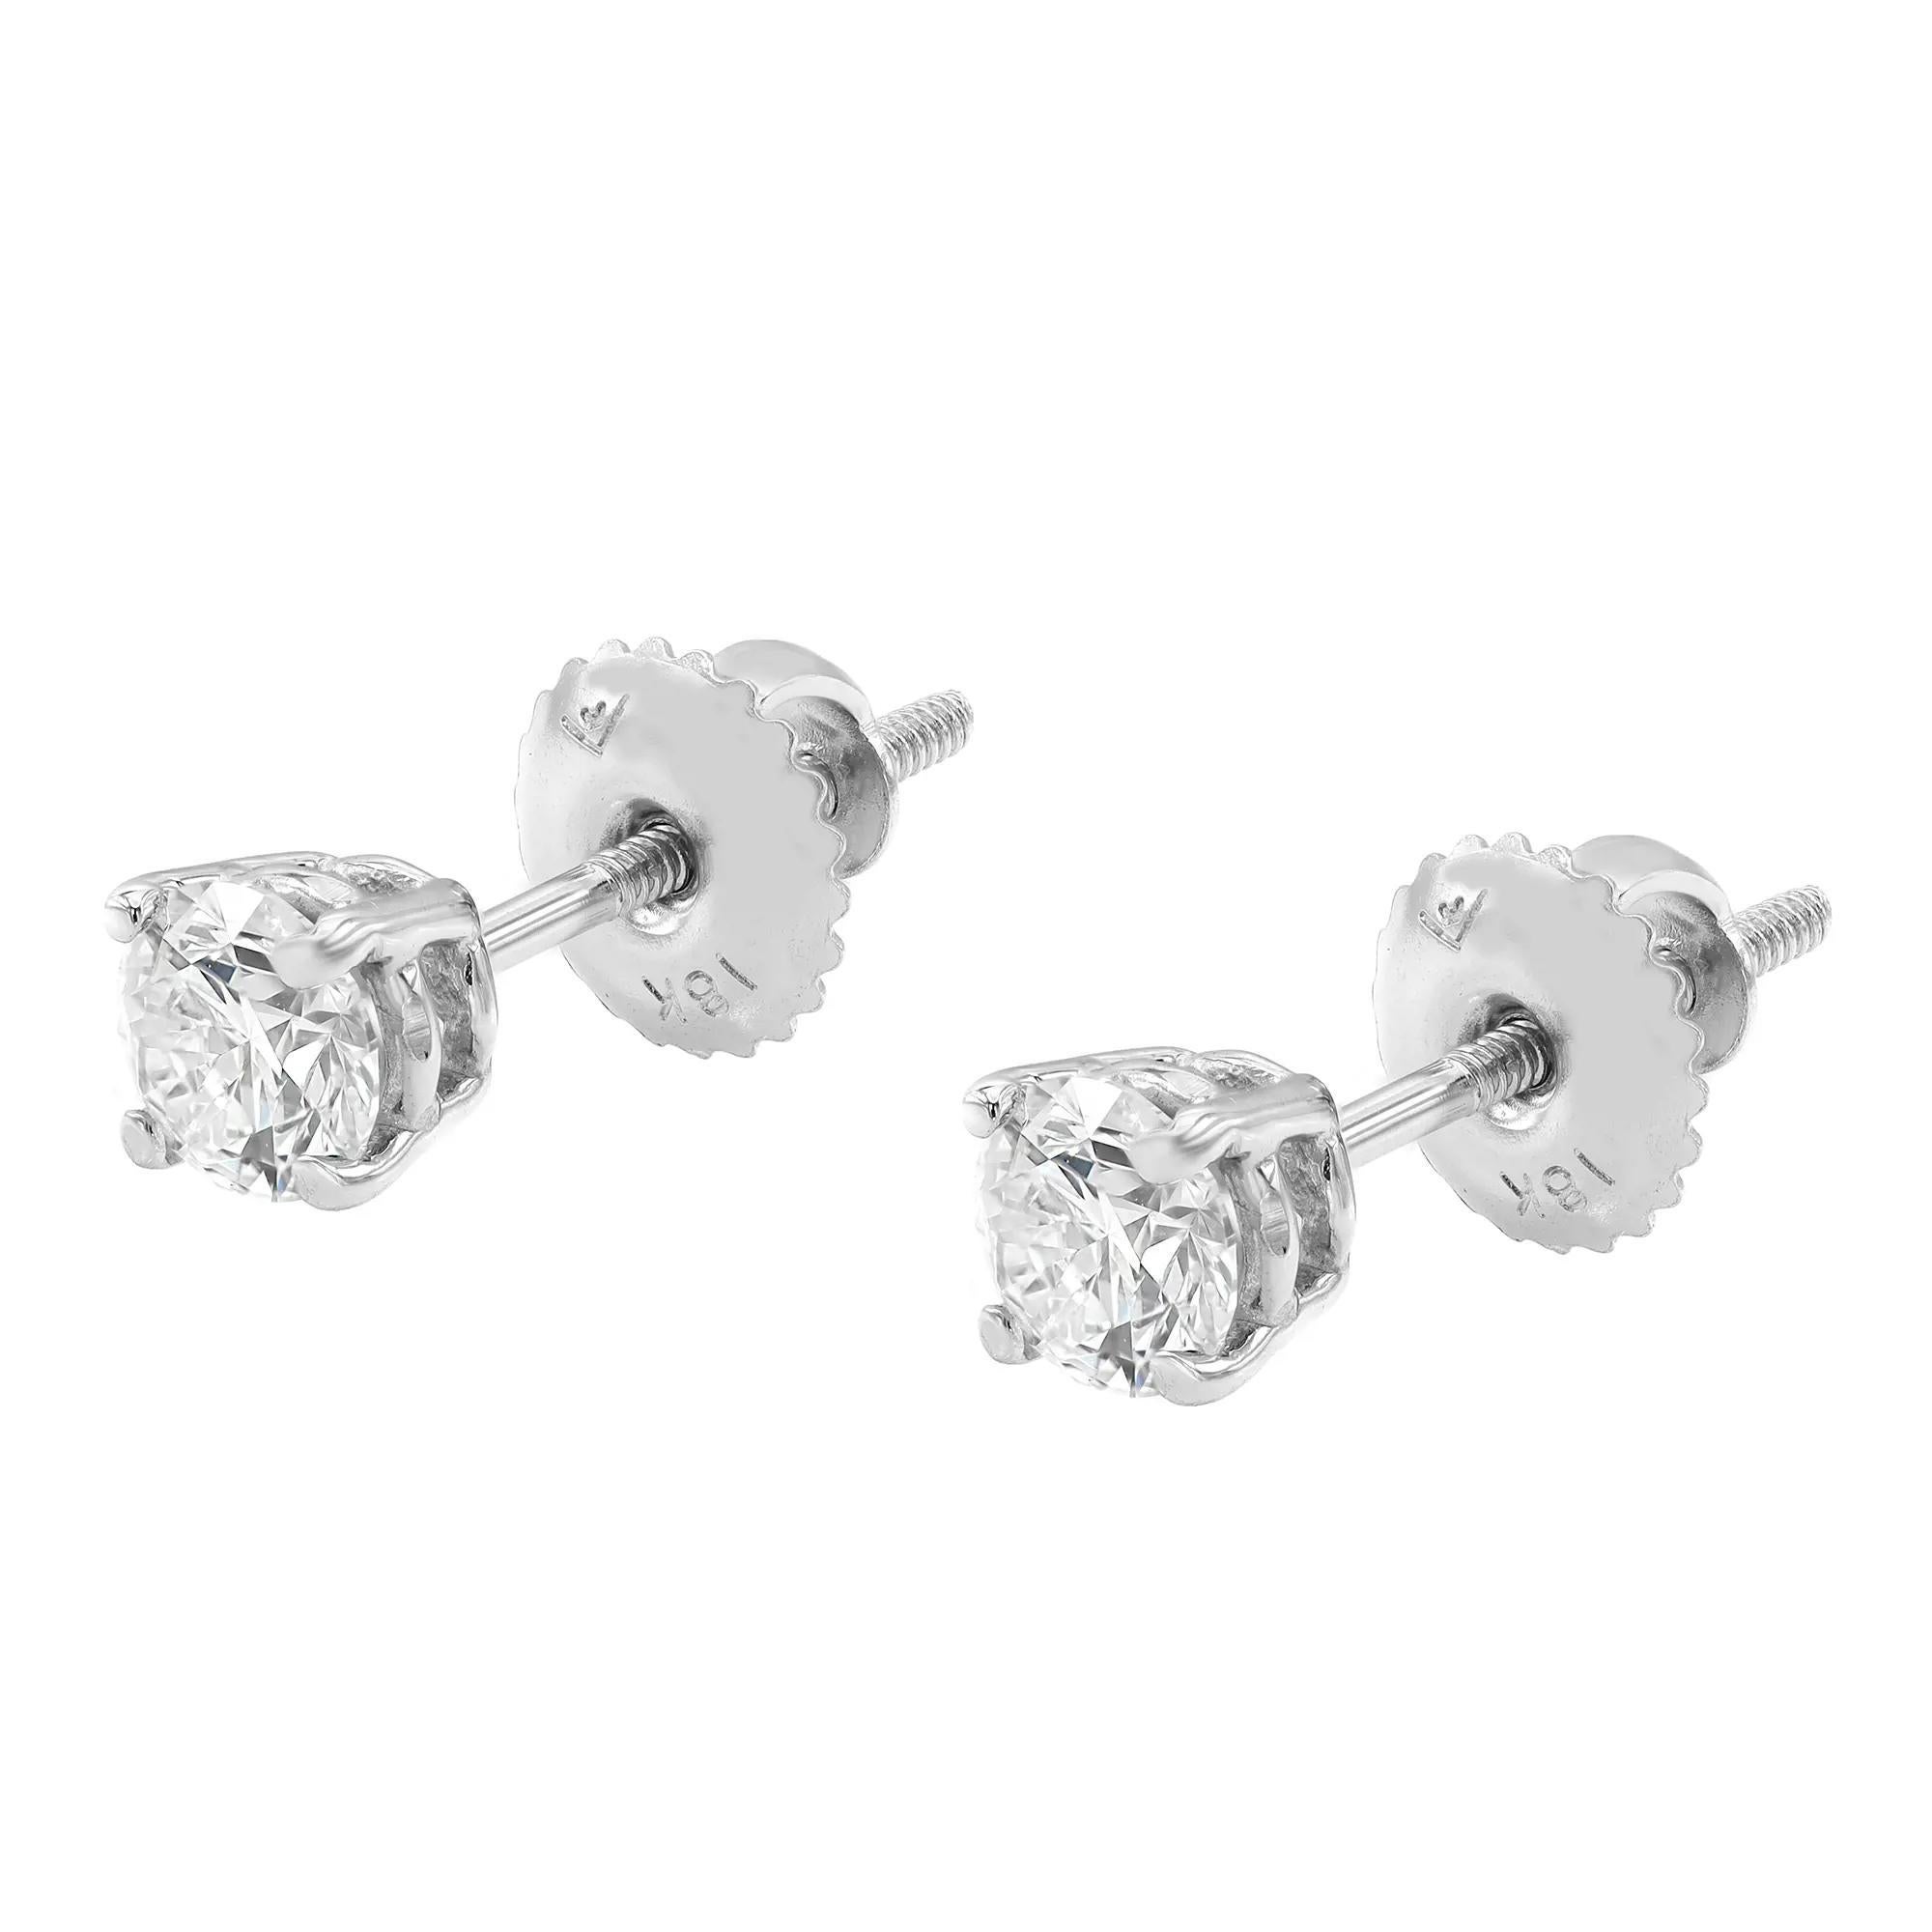 Modern Rachel Koen Round Diamond Solitaire Stud Earrings 18K White Gold 0.70Cttw For Sale